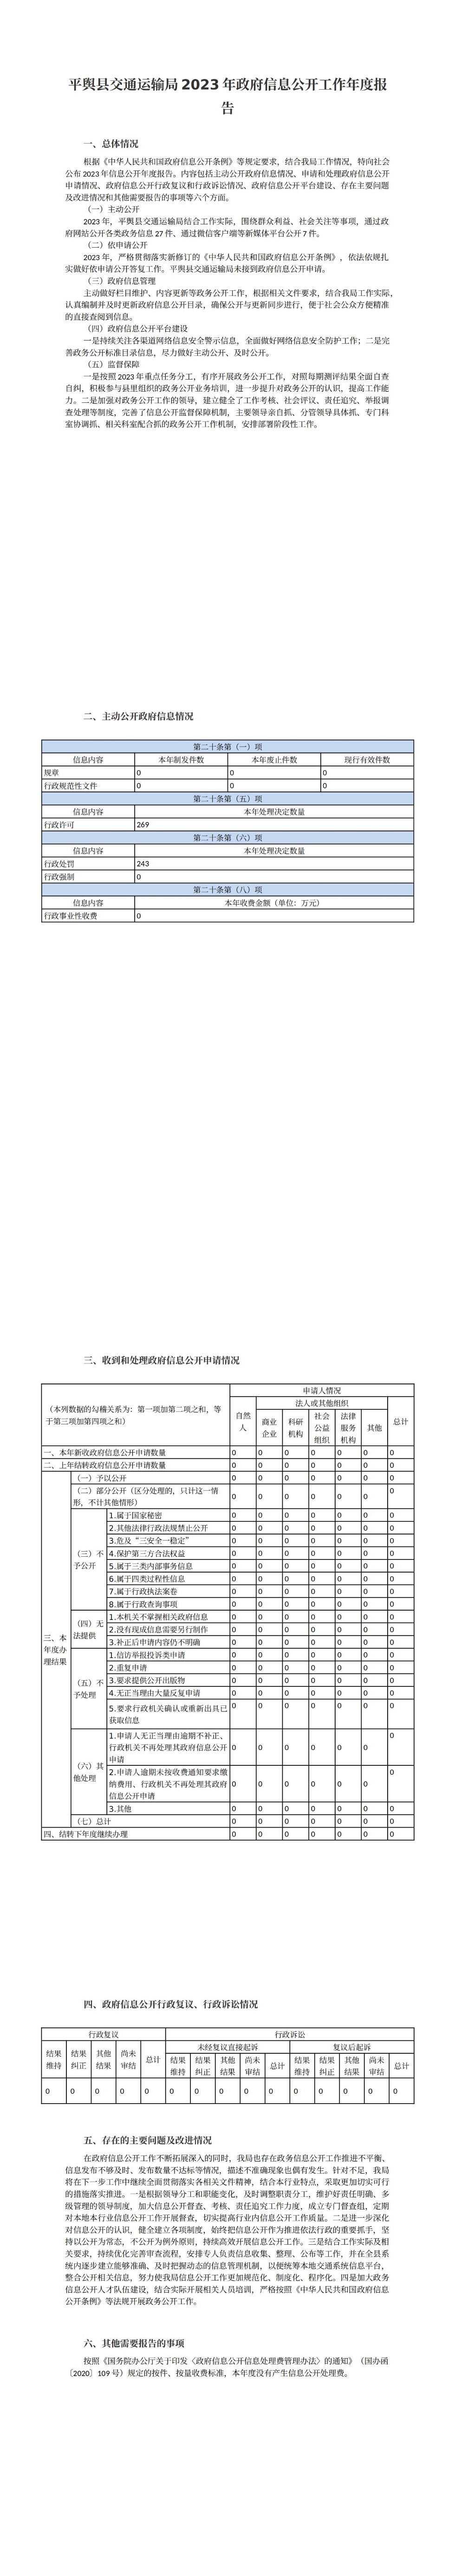 平舆县交通运输局2023年政府信息公开工作年度报告_00.jpg